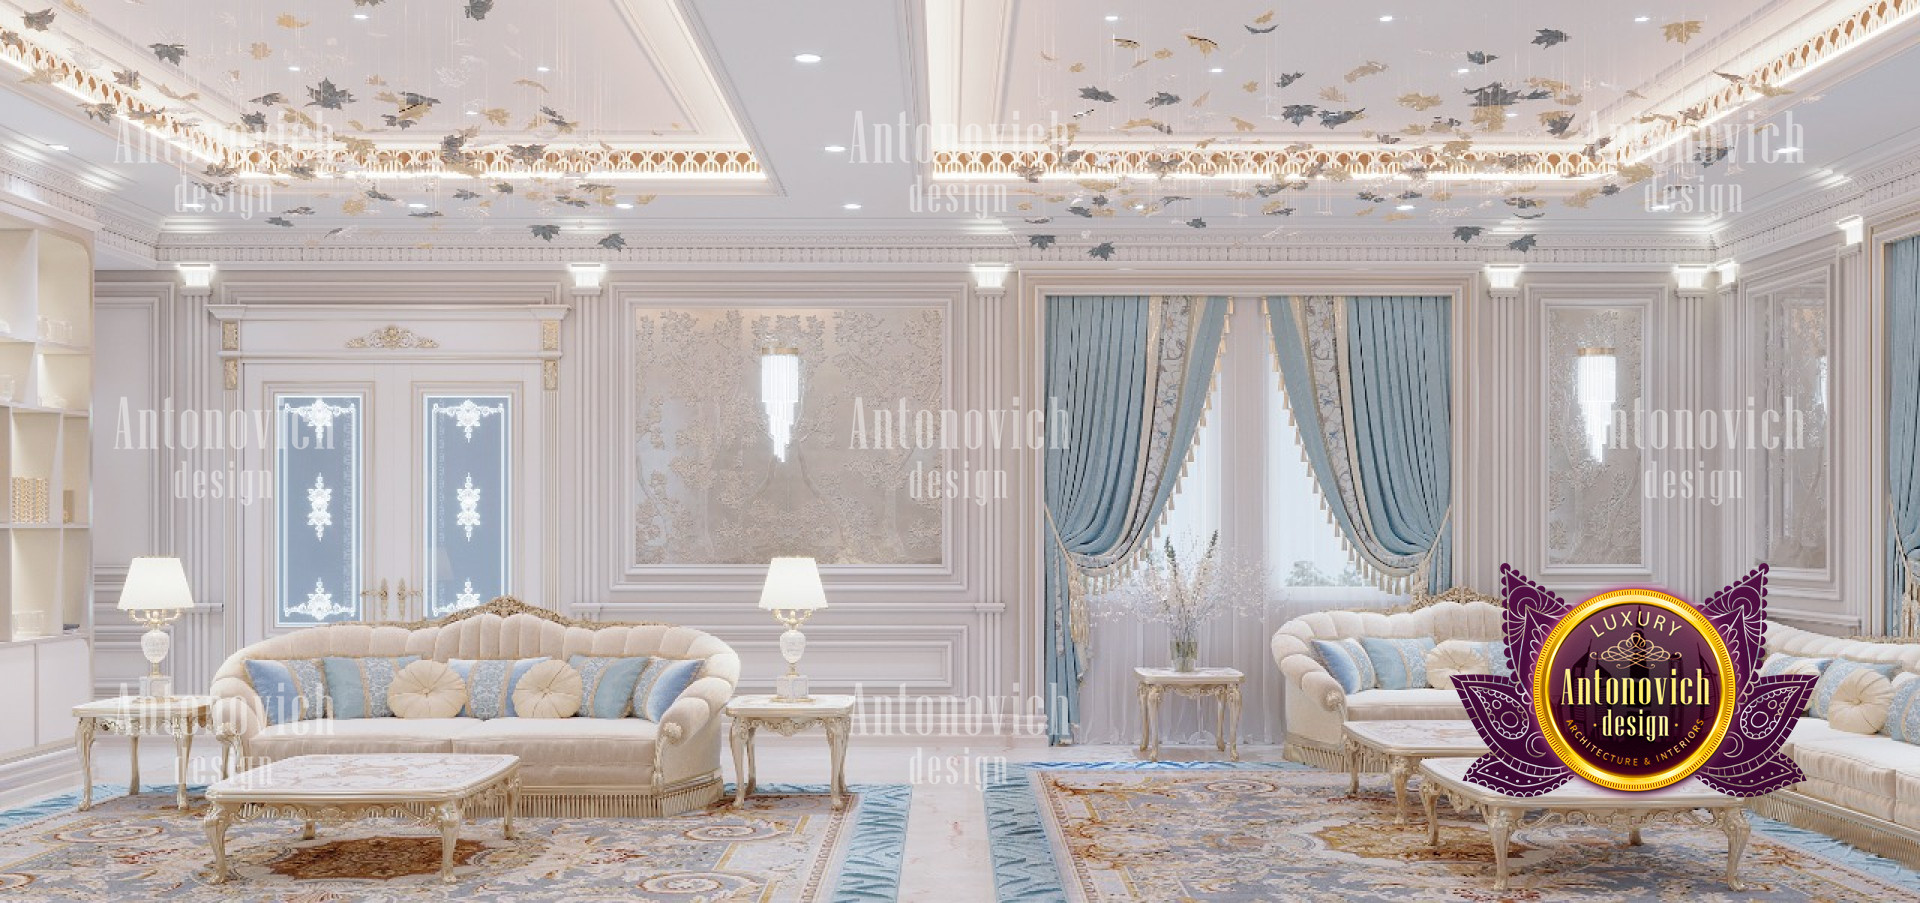 Luxury Antonovich Design Expert In Home Designing